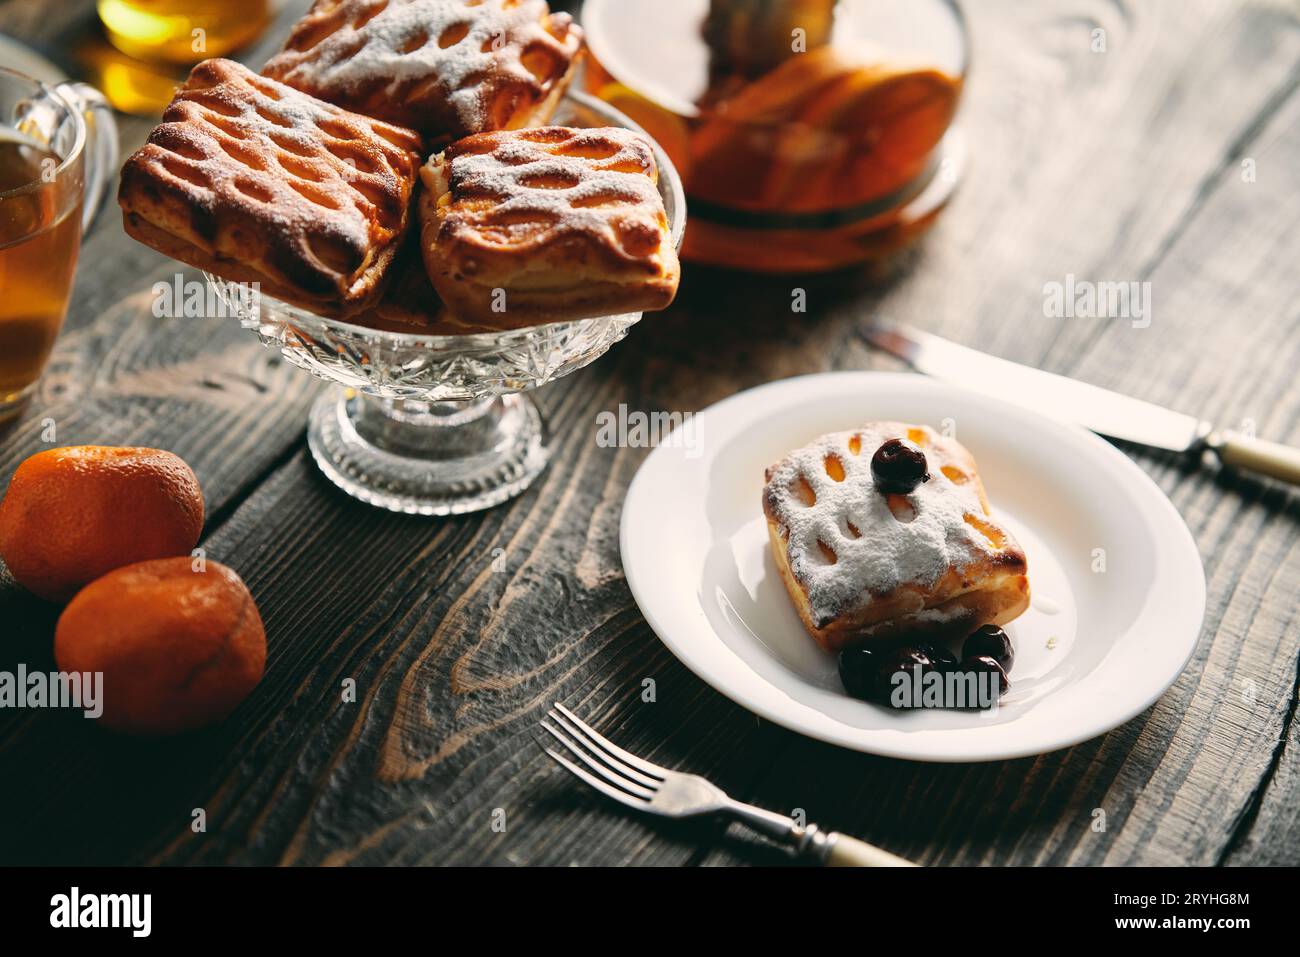 Pâtisseries faites maison sur une table magnifiquement servie décorée dans un style rustique. Maison confortable, thé, cuisine Banque D'Images